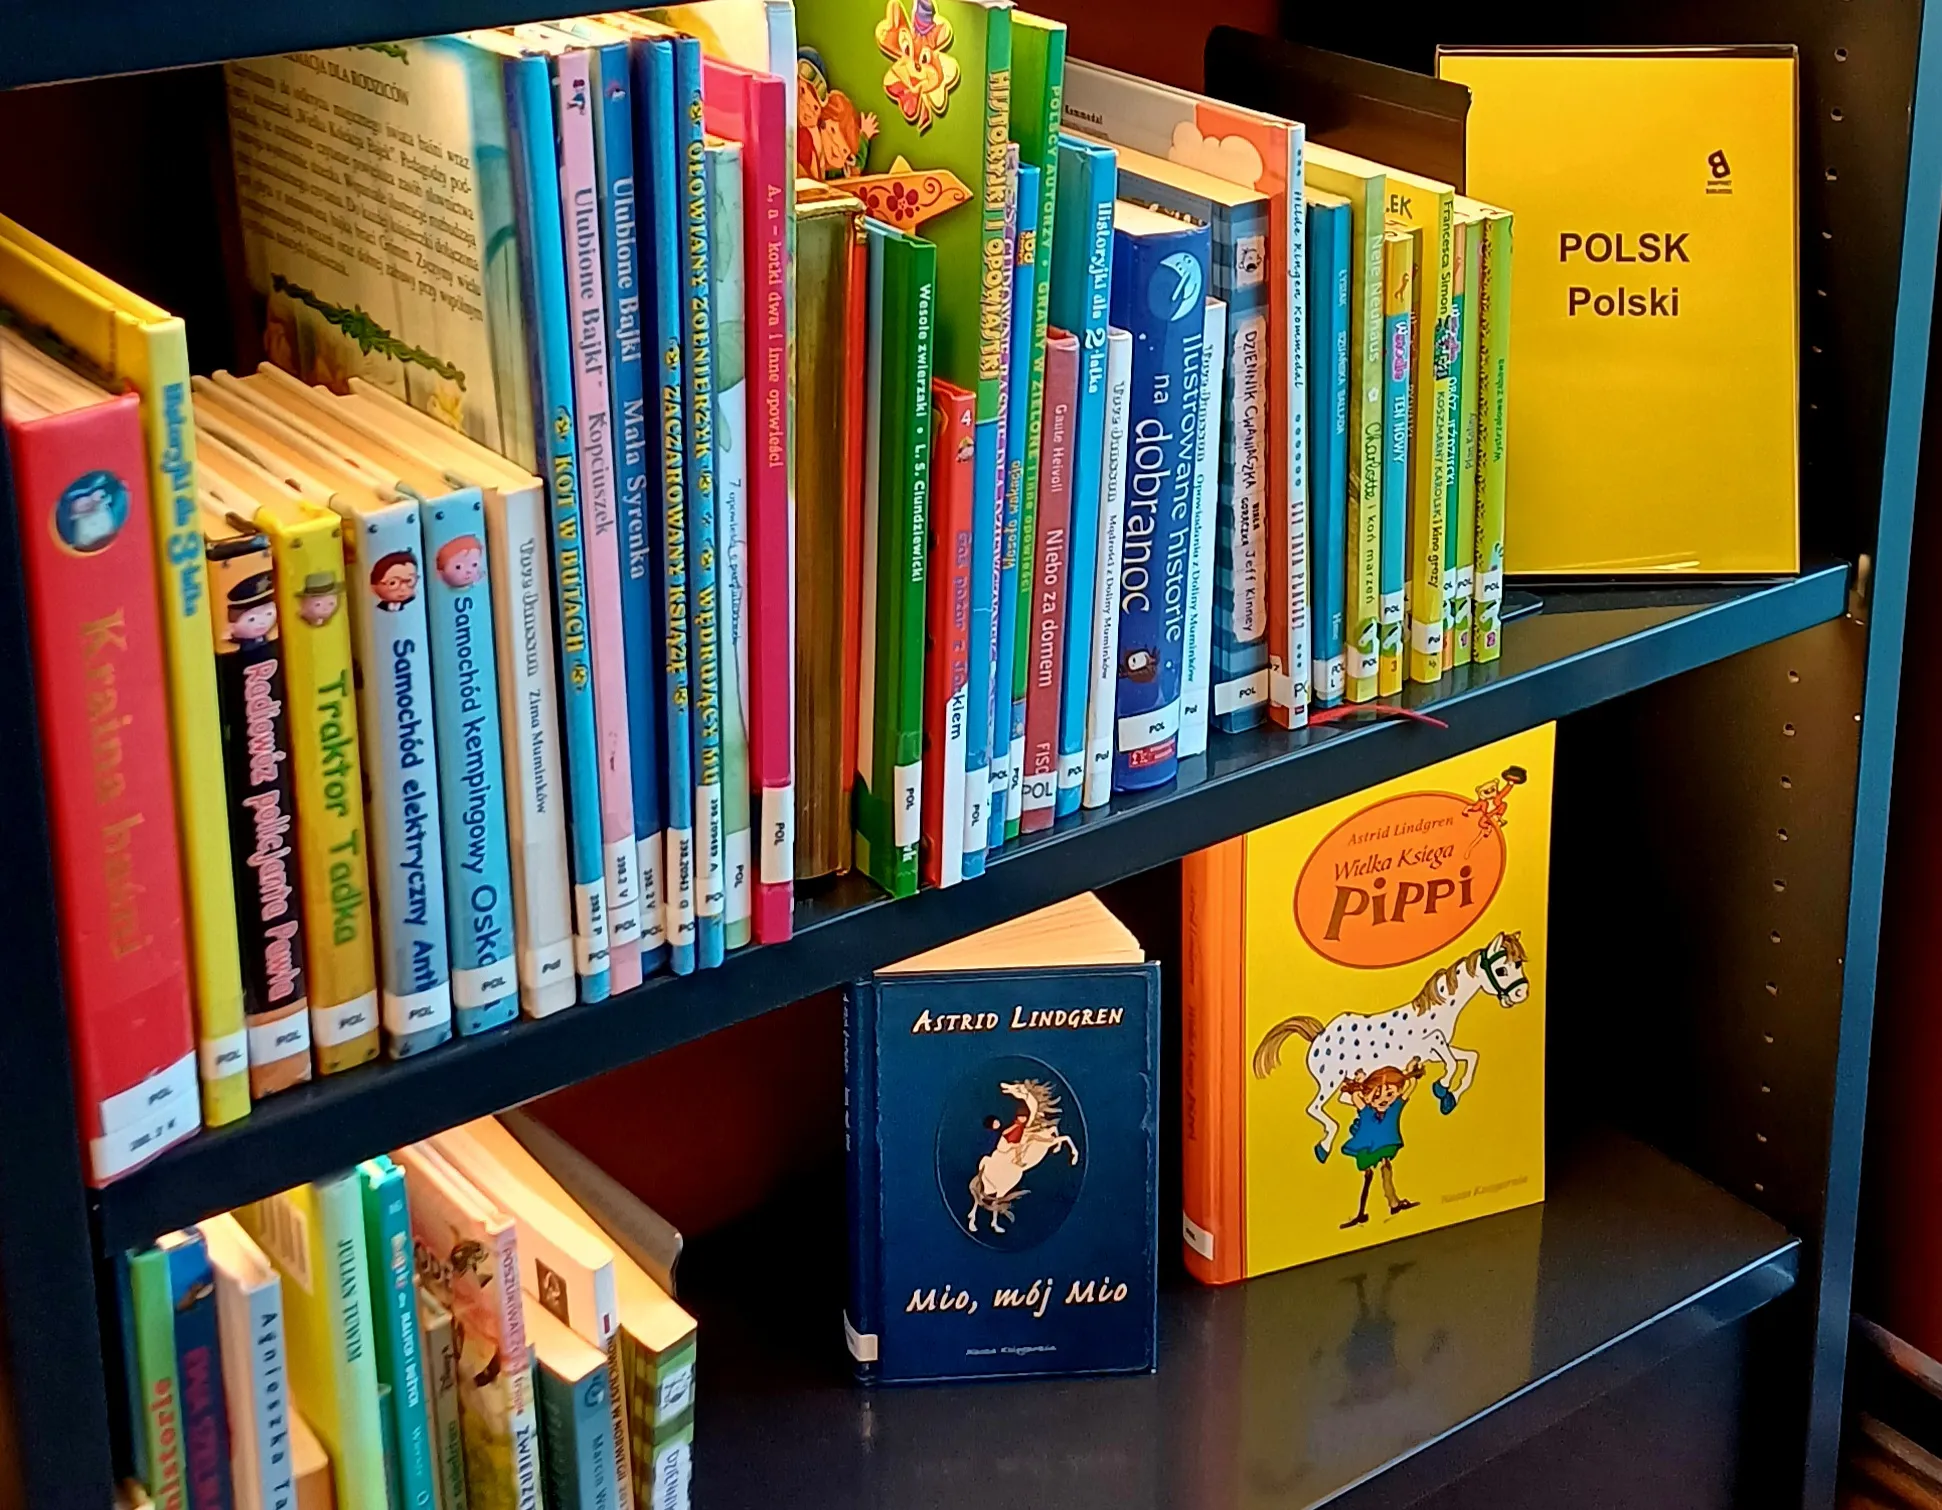 Cărți în poloneză în biblioteca norvegiană: o bibliotecă multilingvă disponibilă pentru toată lumea